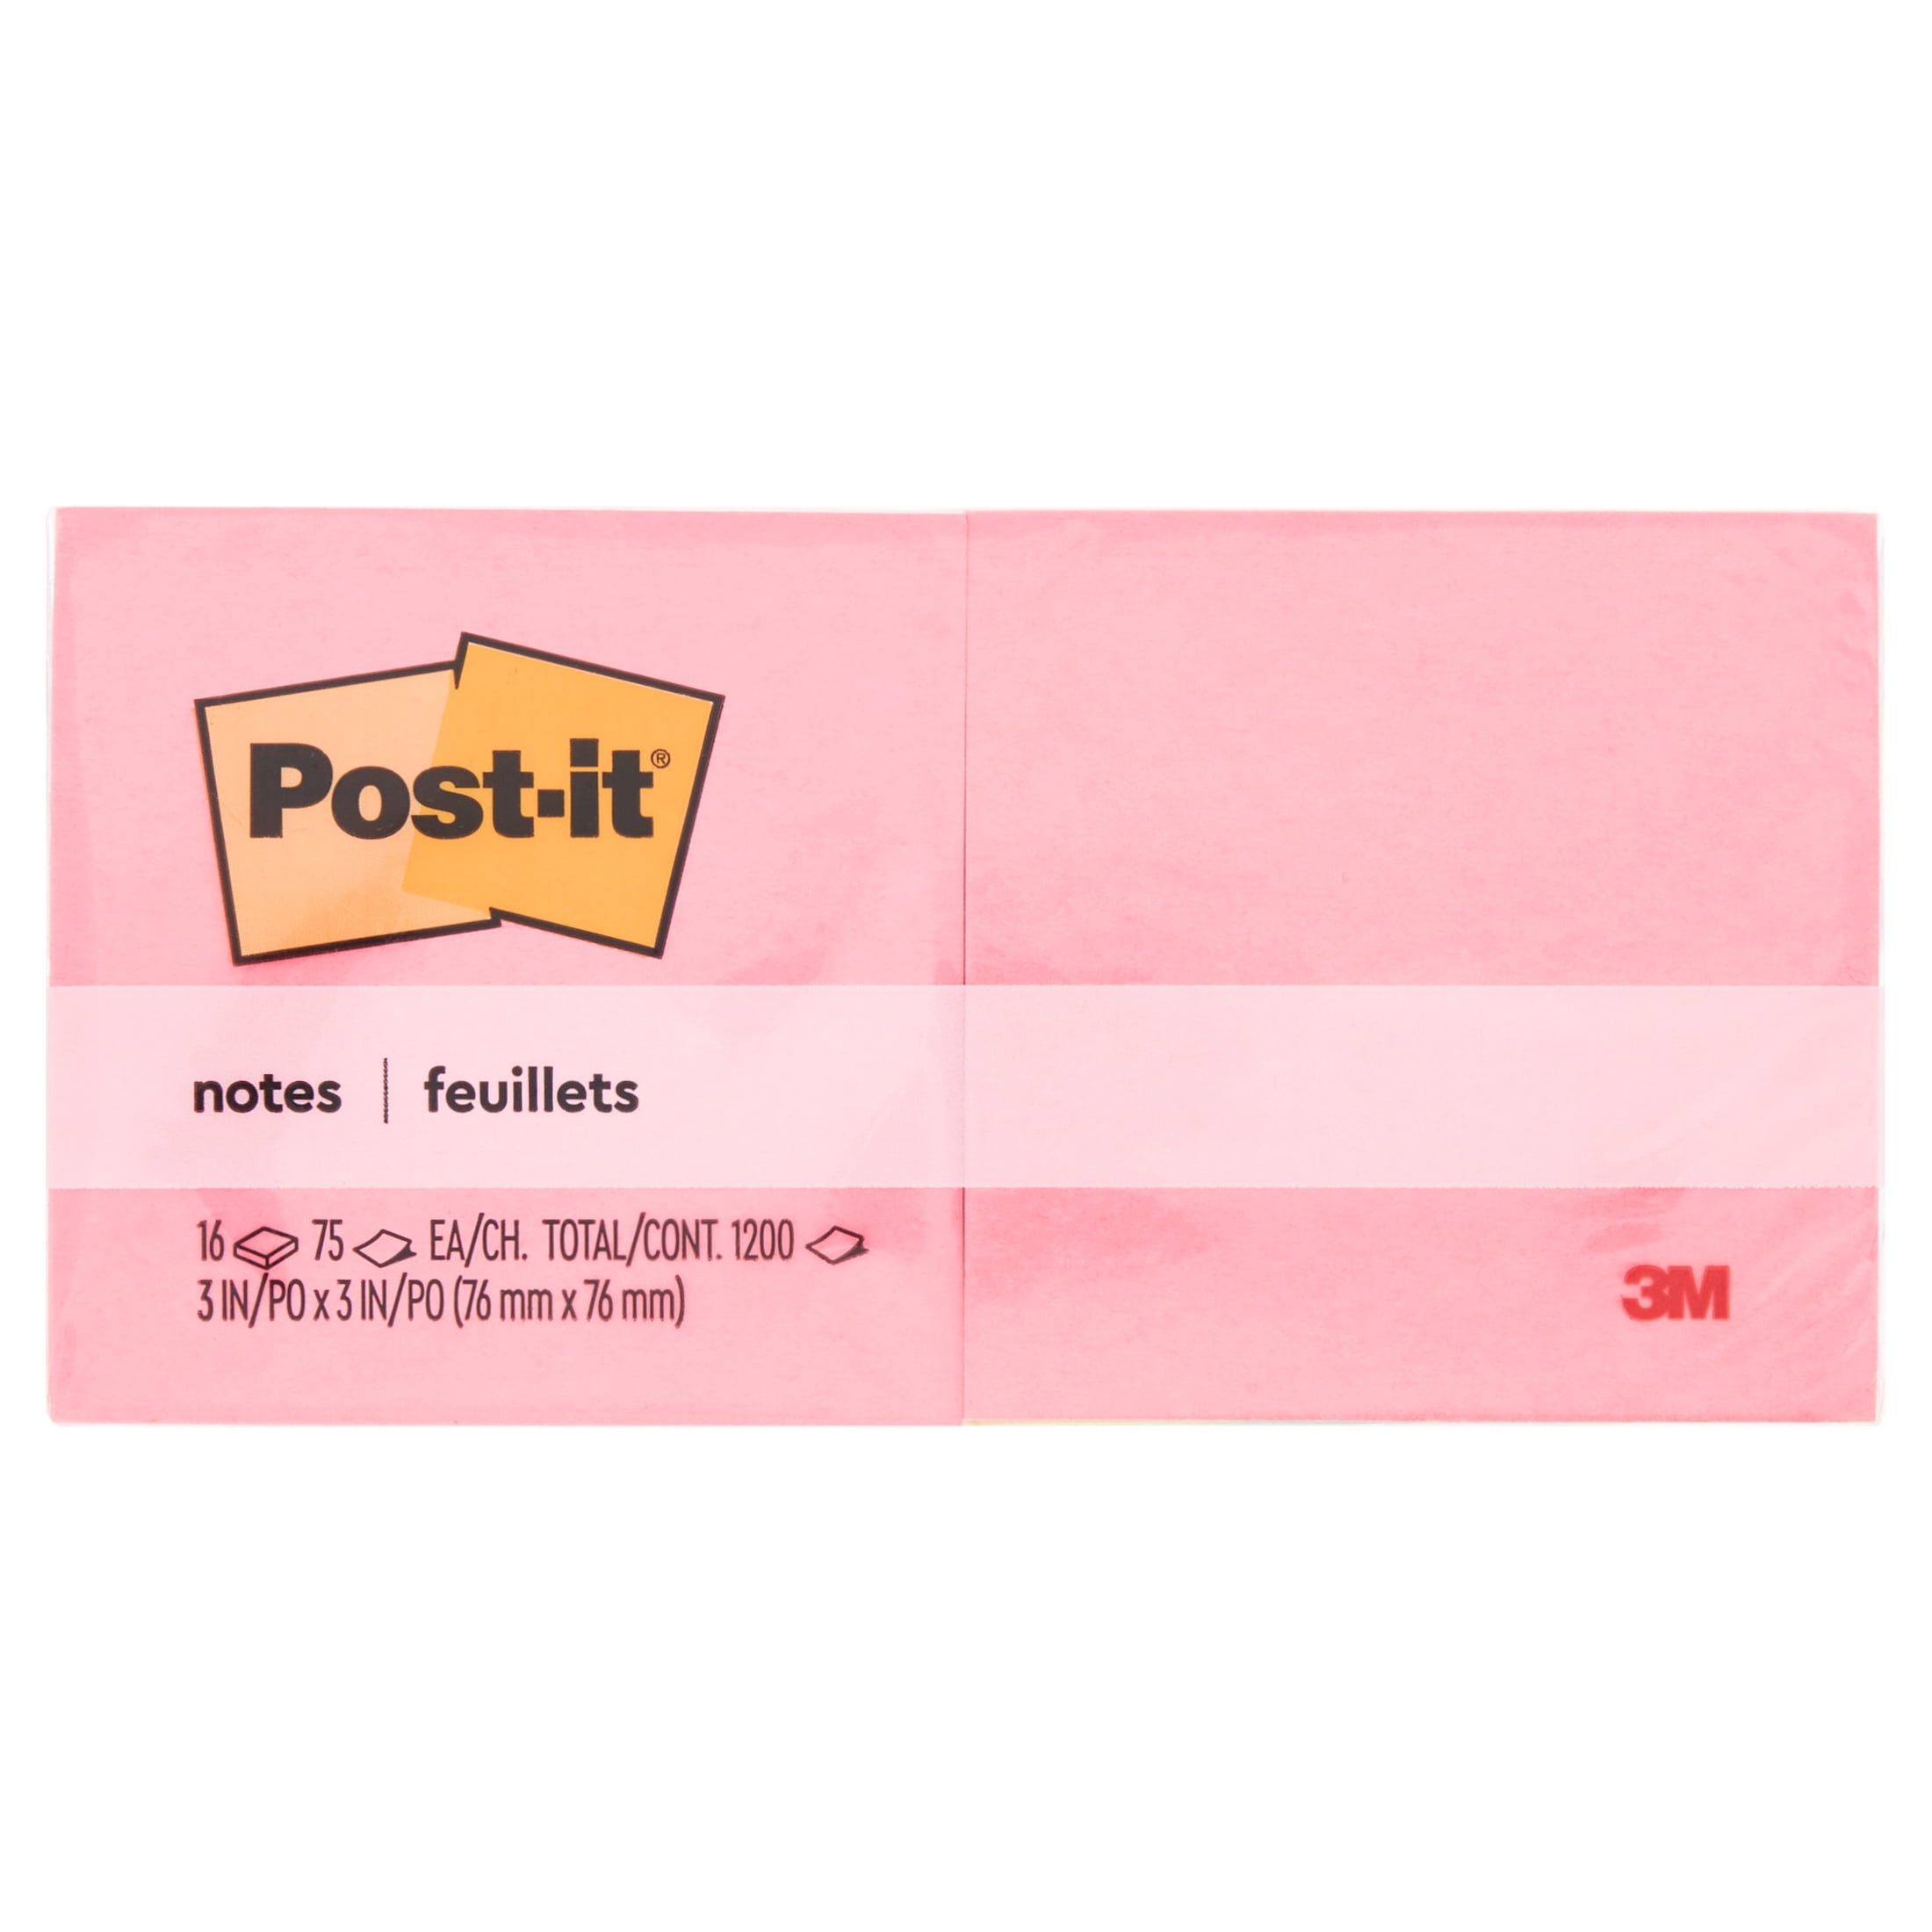 Post-it Notes, 3 x 3, 100 Sheets per Pad, 18 pk